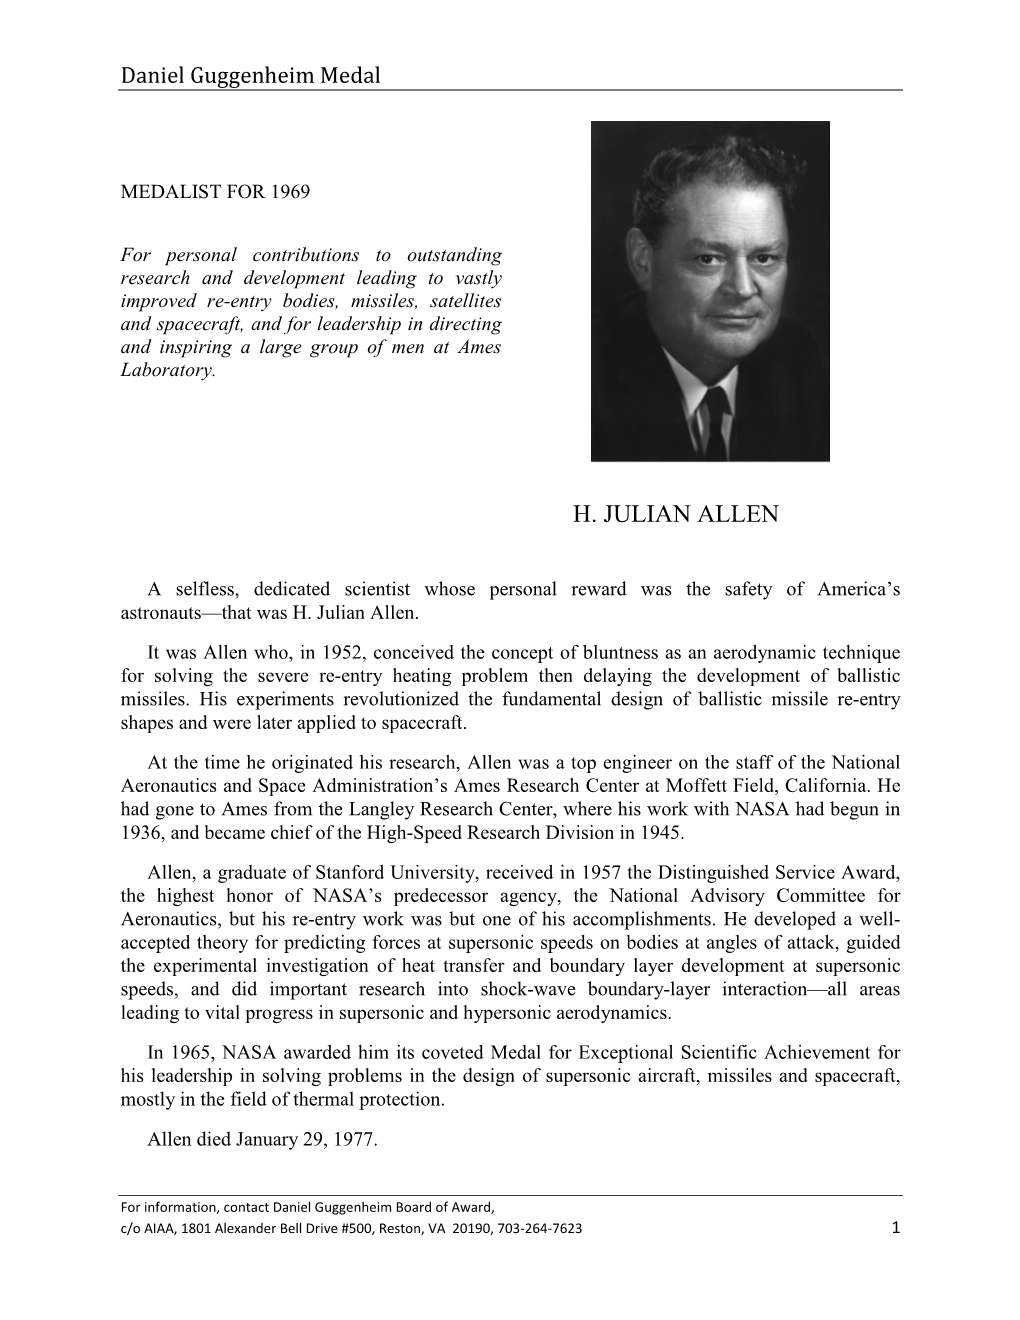 H. Julian Allen